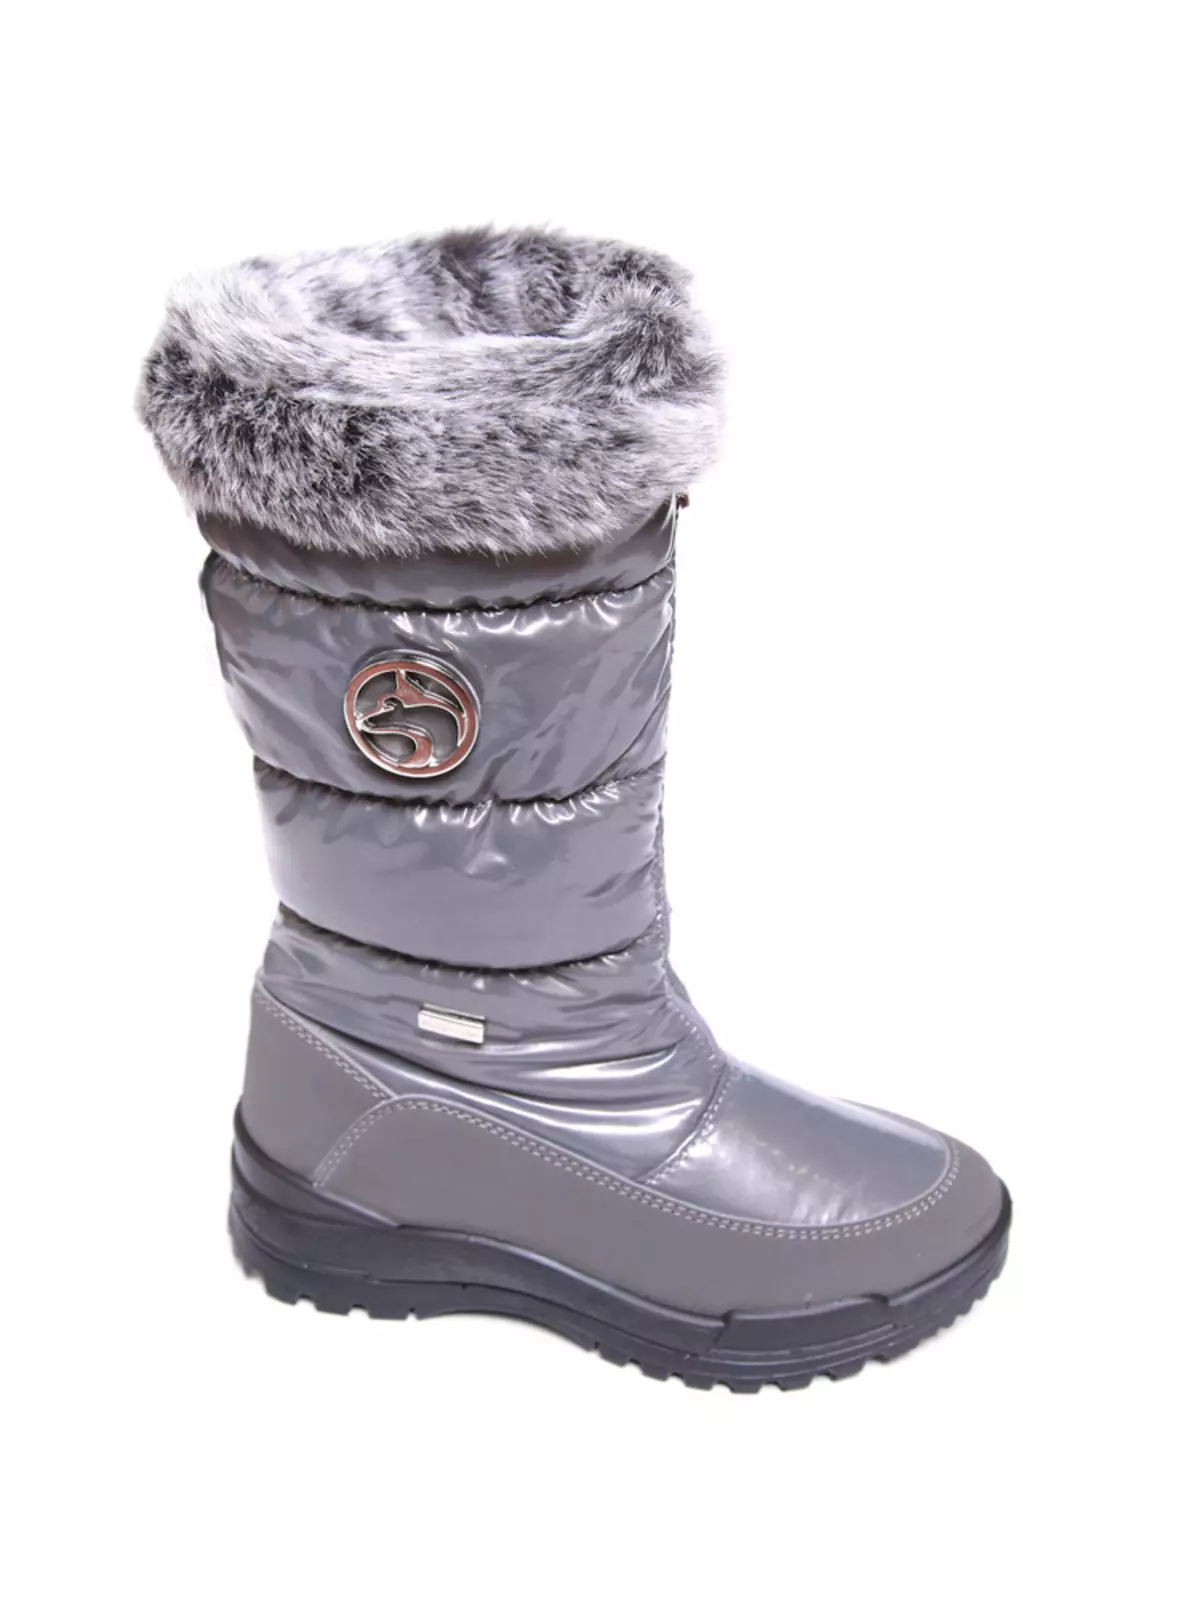 मुलांचे बूट अलास्का (70 फोटो): हिवाळ्यासाठी हिवाळा आणि अलास्कल जाळी आणि अलास्का मूळबद्दल पुनरावलोकनांसाठी हिवाळा 13577_62